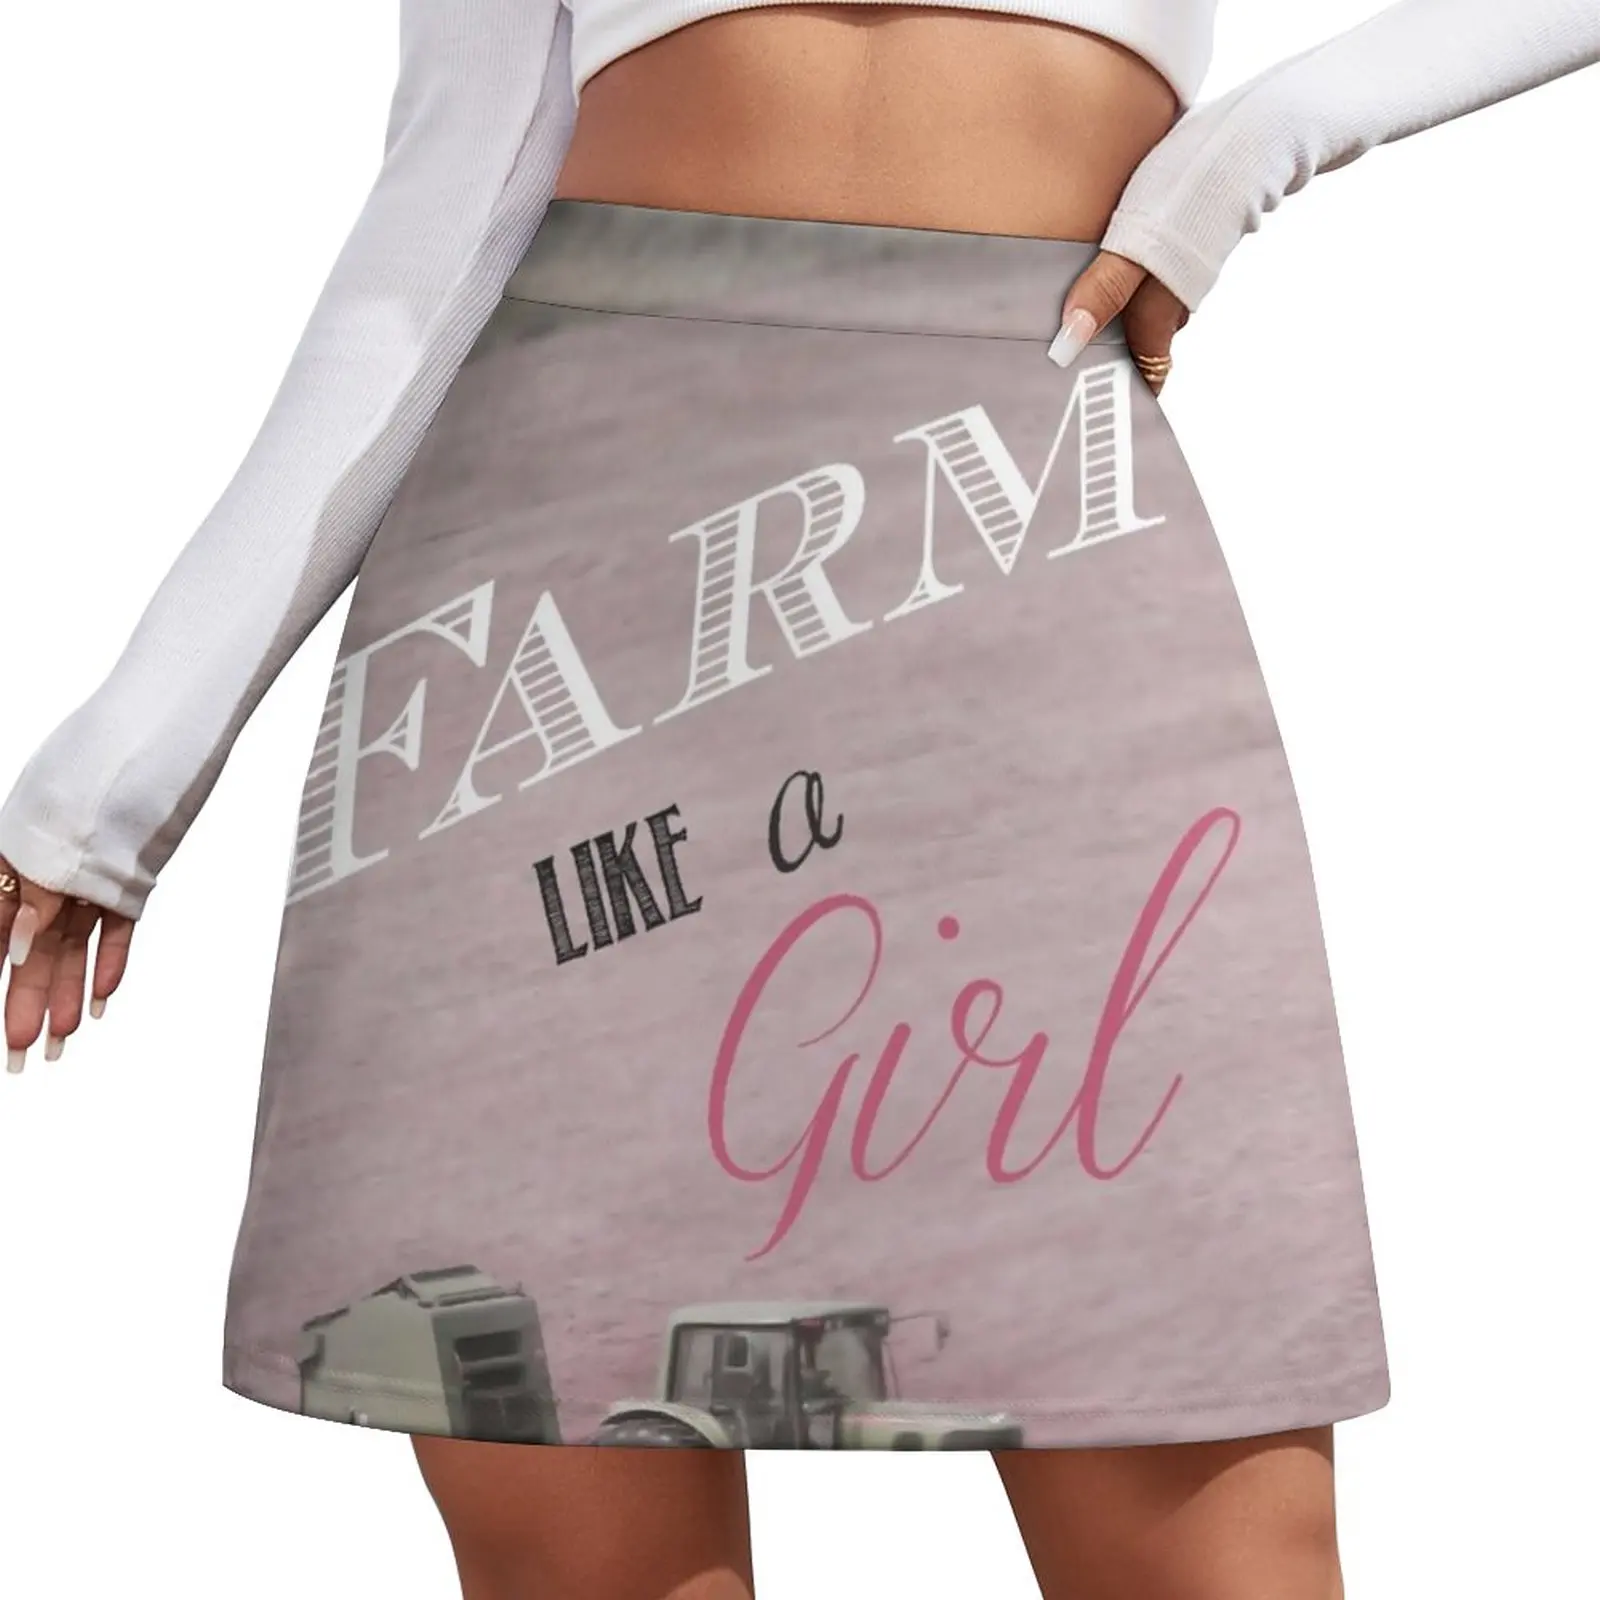 

Женская мини-юбка в стиле «Ферма как девушка»